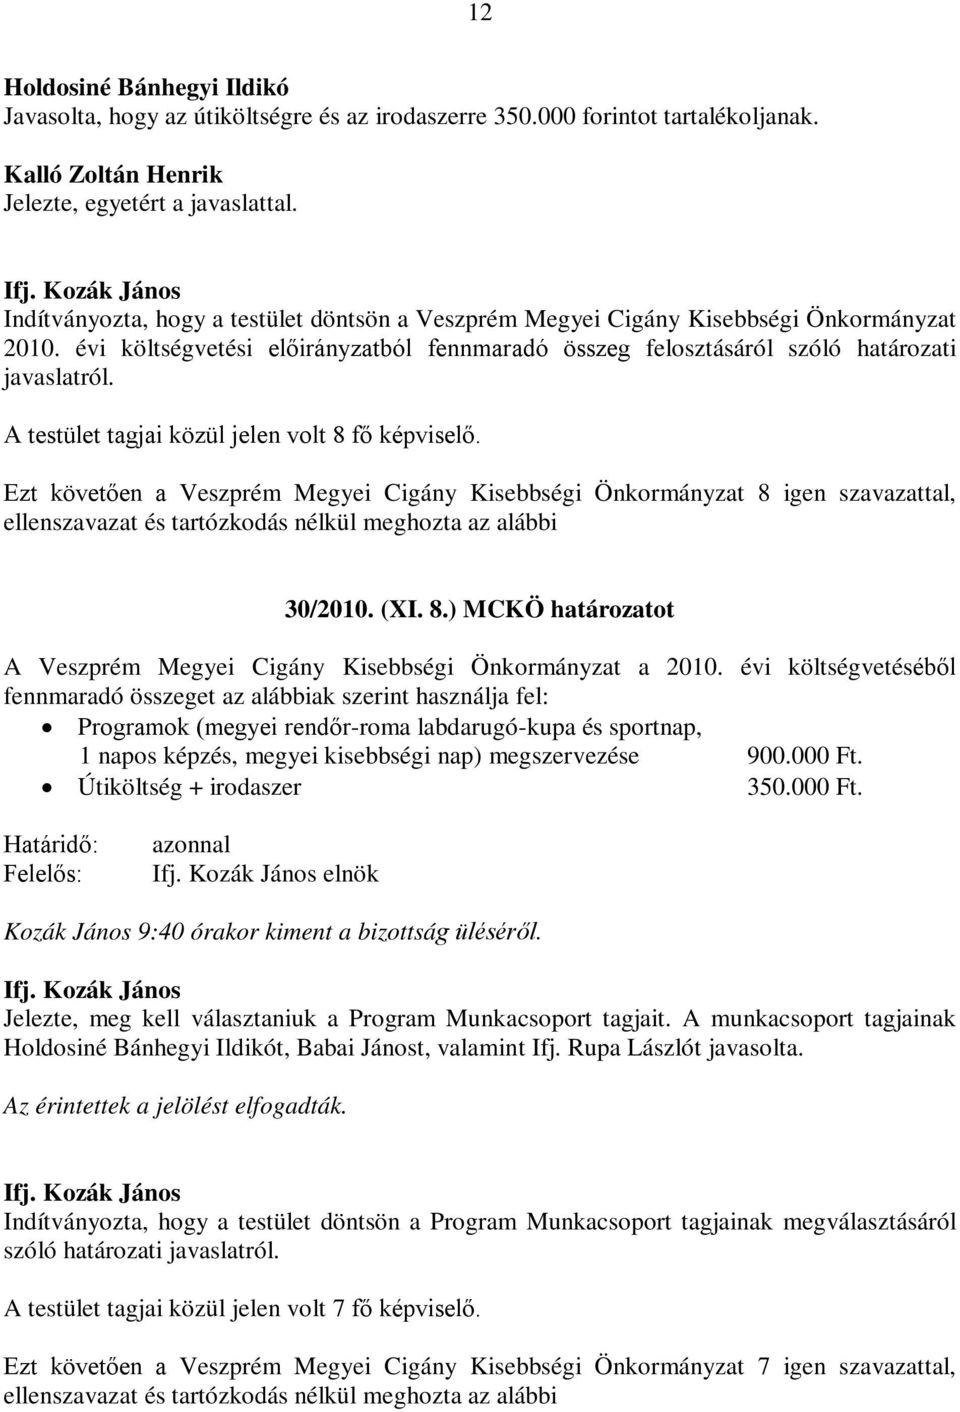 A testület tagjai közül jelen volt 8 fő képviselő. Ezt követően a Veszprém Megyei Cigány Kisebbségi Önkormányzat 8 igen szavazattal, 30/2010. (XI. 8.) MCKÖ határozatot A Veszprém Megyei Cigány Kisebbségi Önkormányzat a 2010.